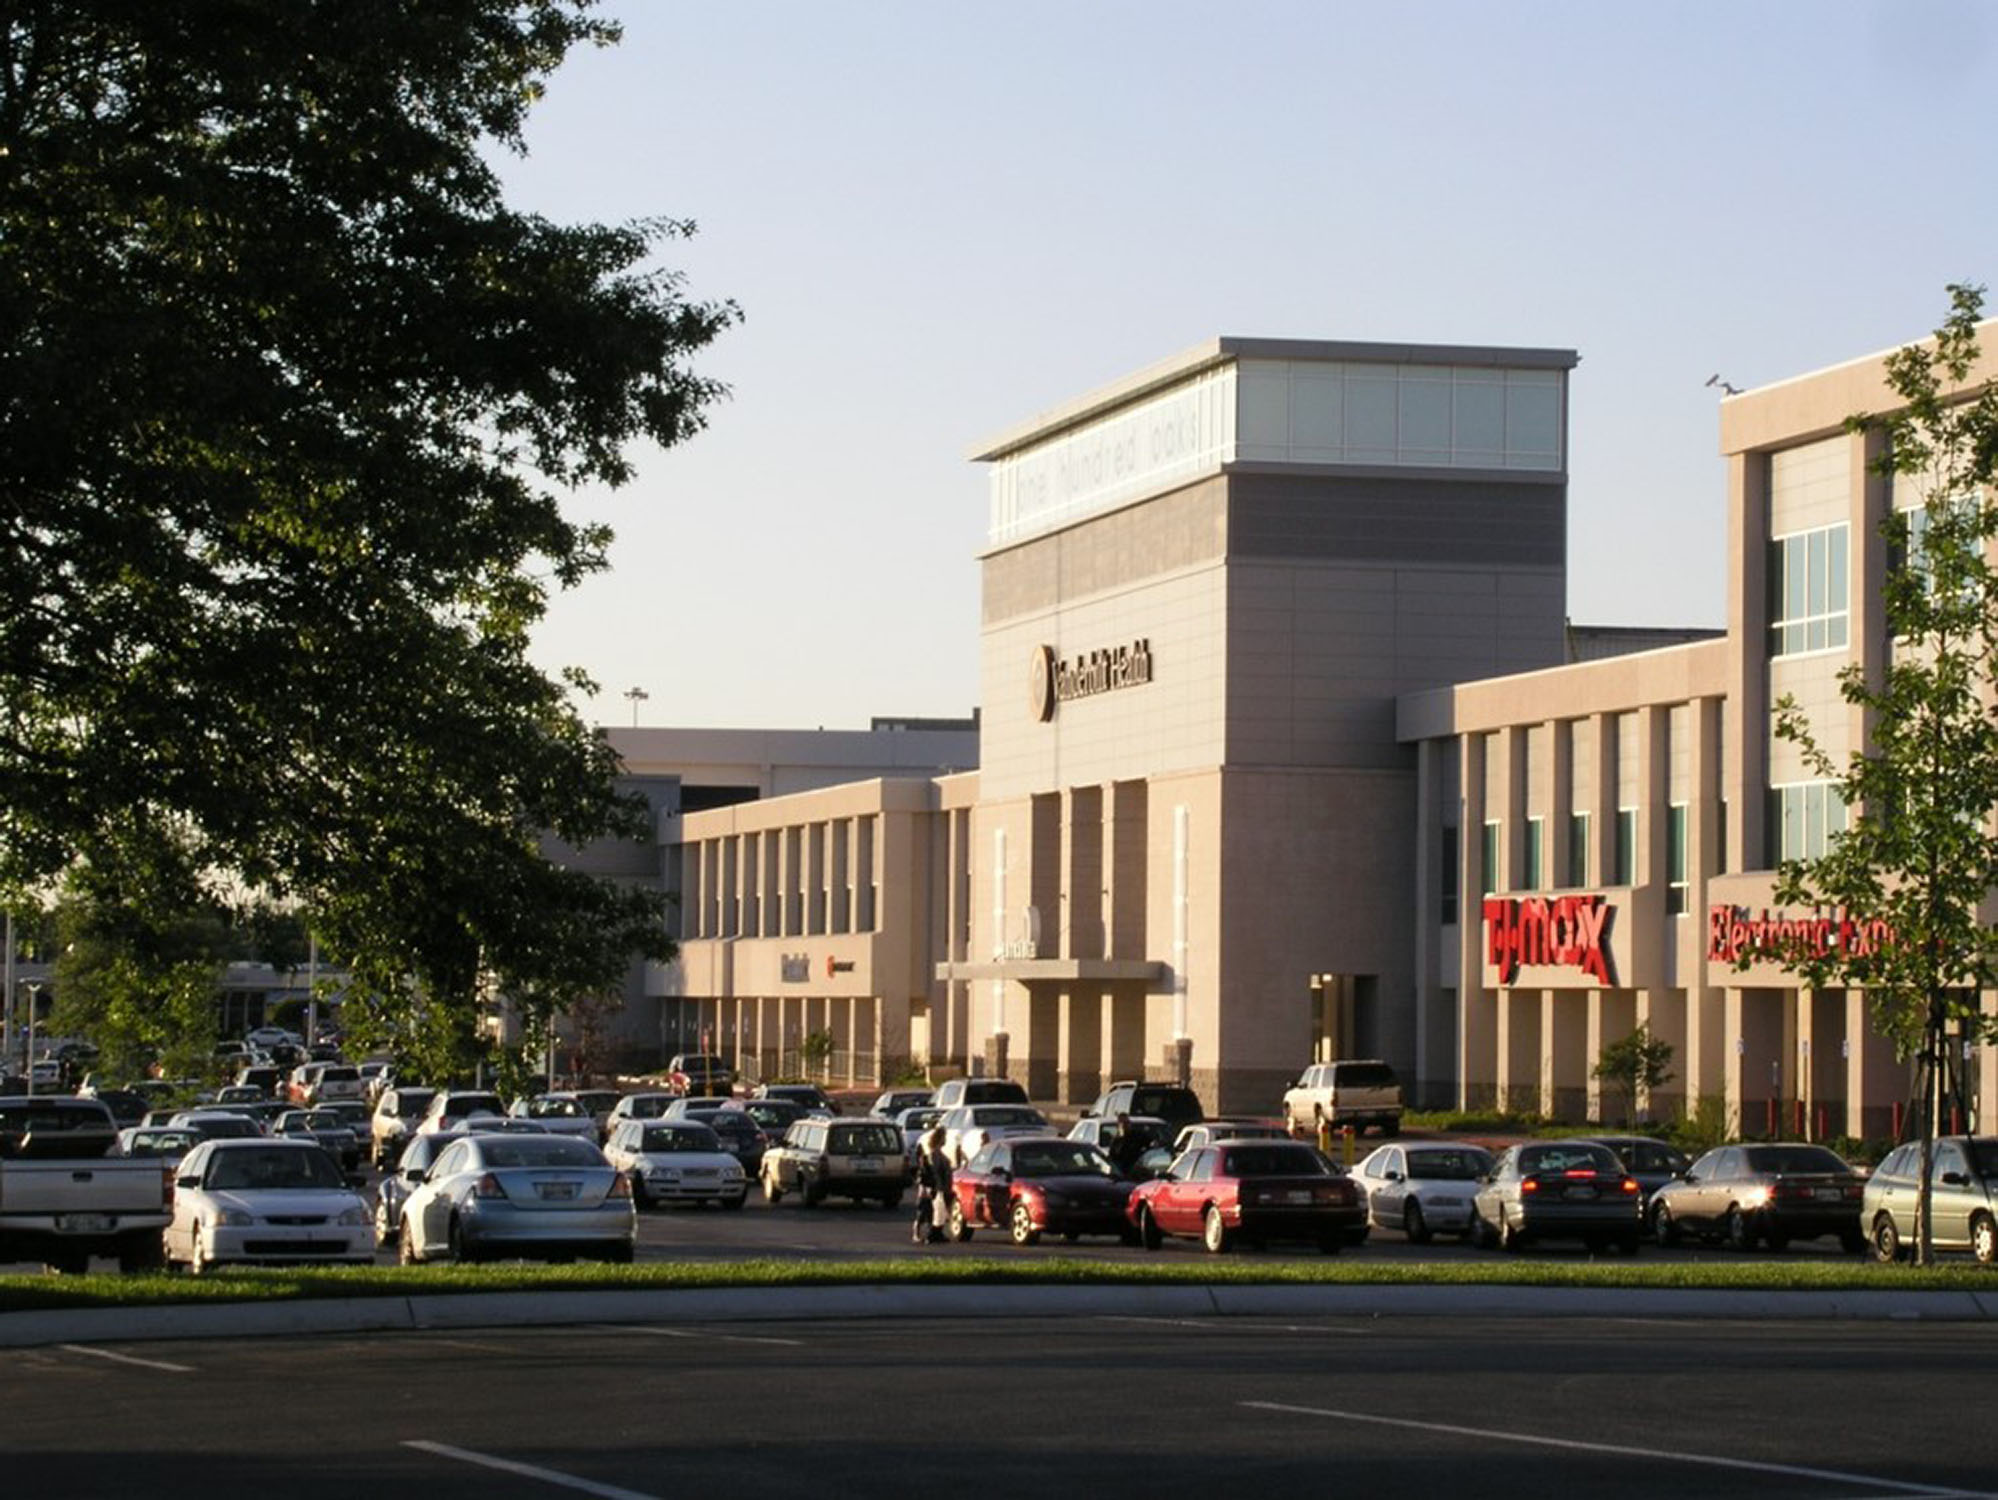 100 Oaks Mall - Wikipedia